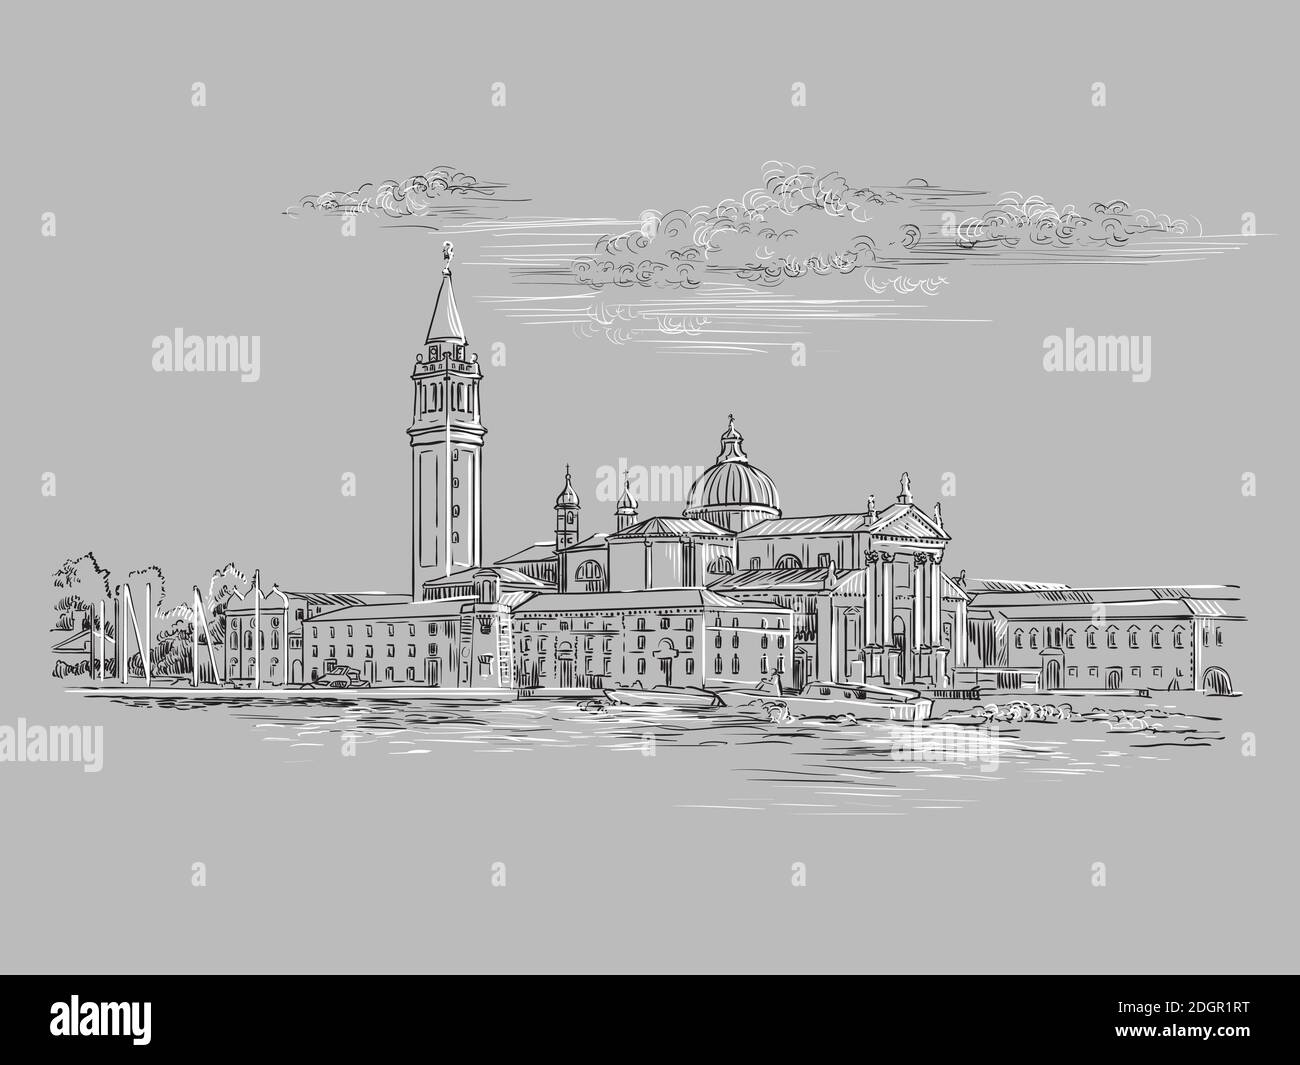 Dessin vectoriel à la main illustration de la vue panoramique de Venise. Esquisse de Venise dessinée à la main dans des couleurs monochromes isolées sur fond gris. Tr Illustration de Vecteur